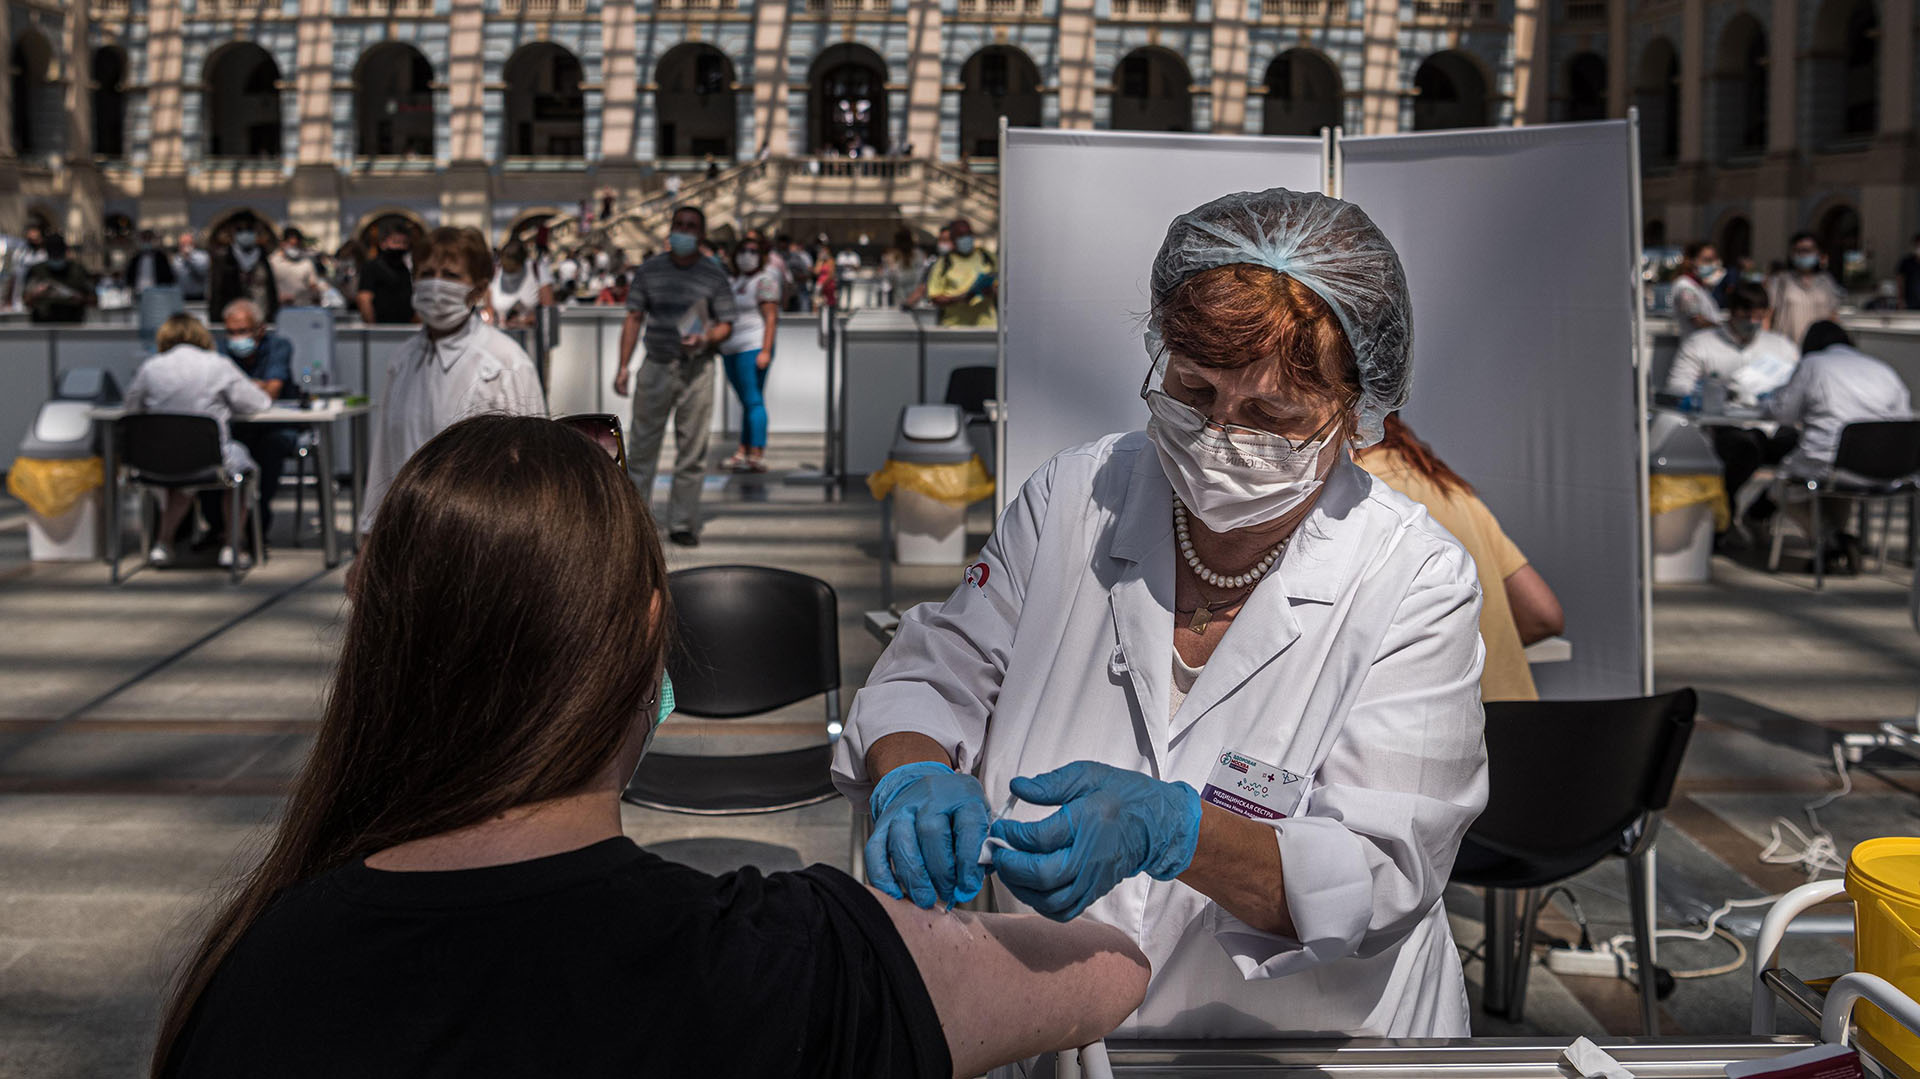 Una trabajadora de la salud administra una vacuna contra el COVID-19 en Moscú, el 6 de julio de 2021. 
(Sergey Ponomarev/The New York Times).